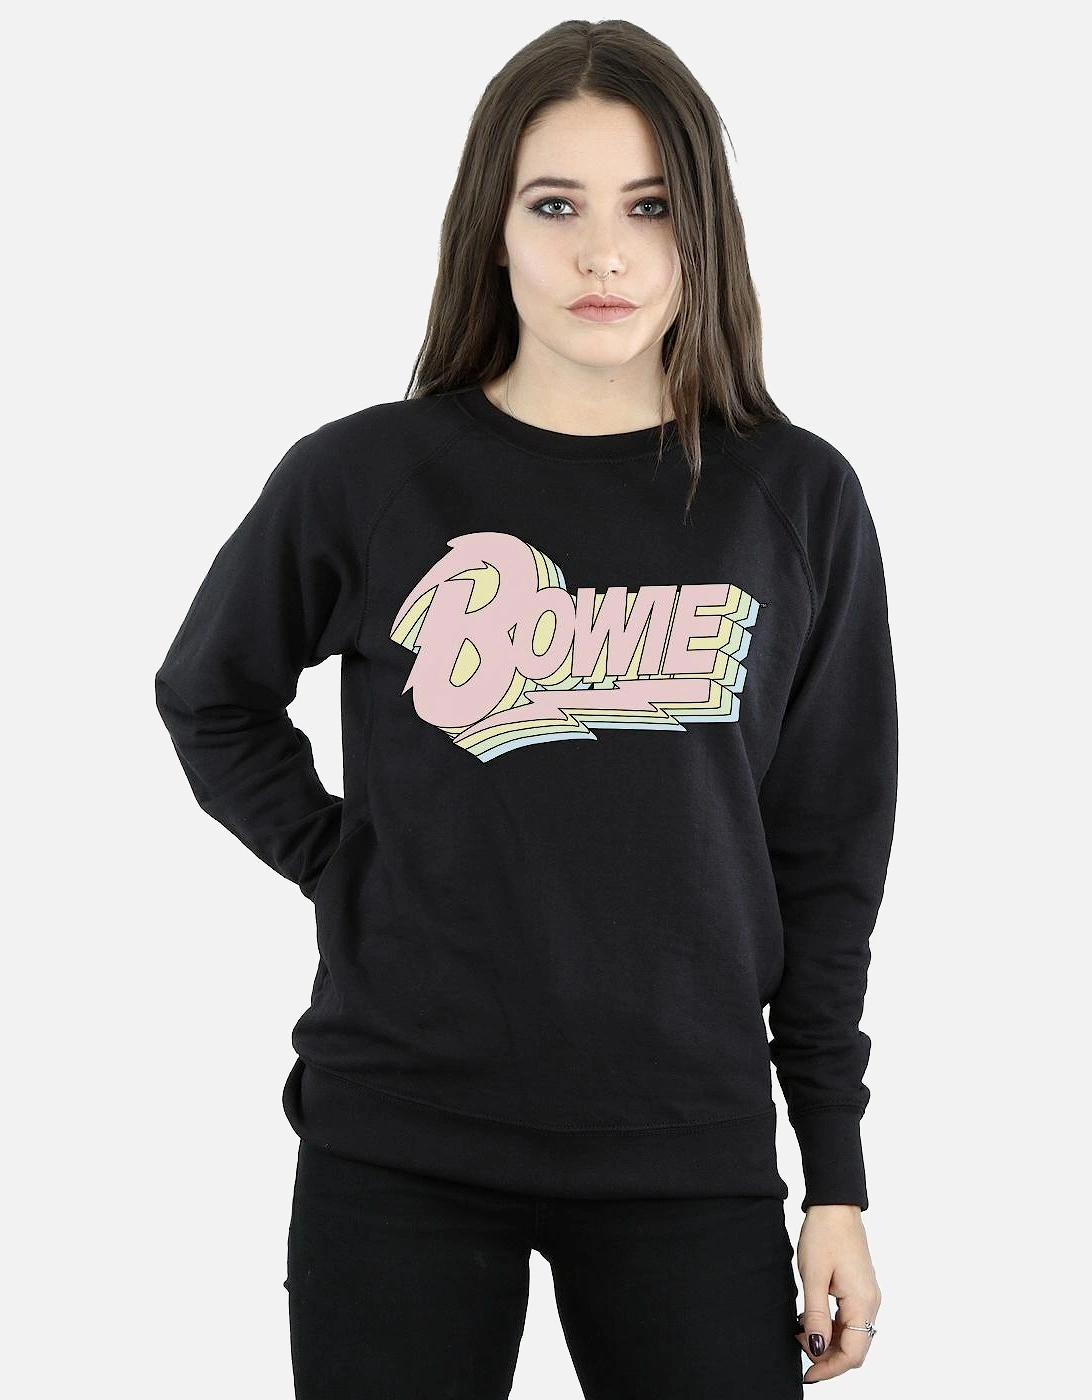 Womens/Ladies Pastel Bowie Sweatshirt